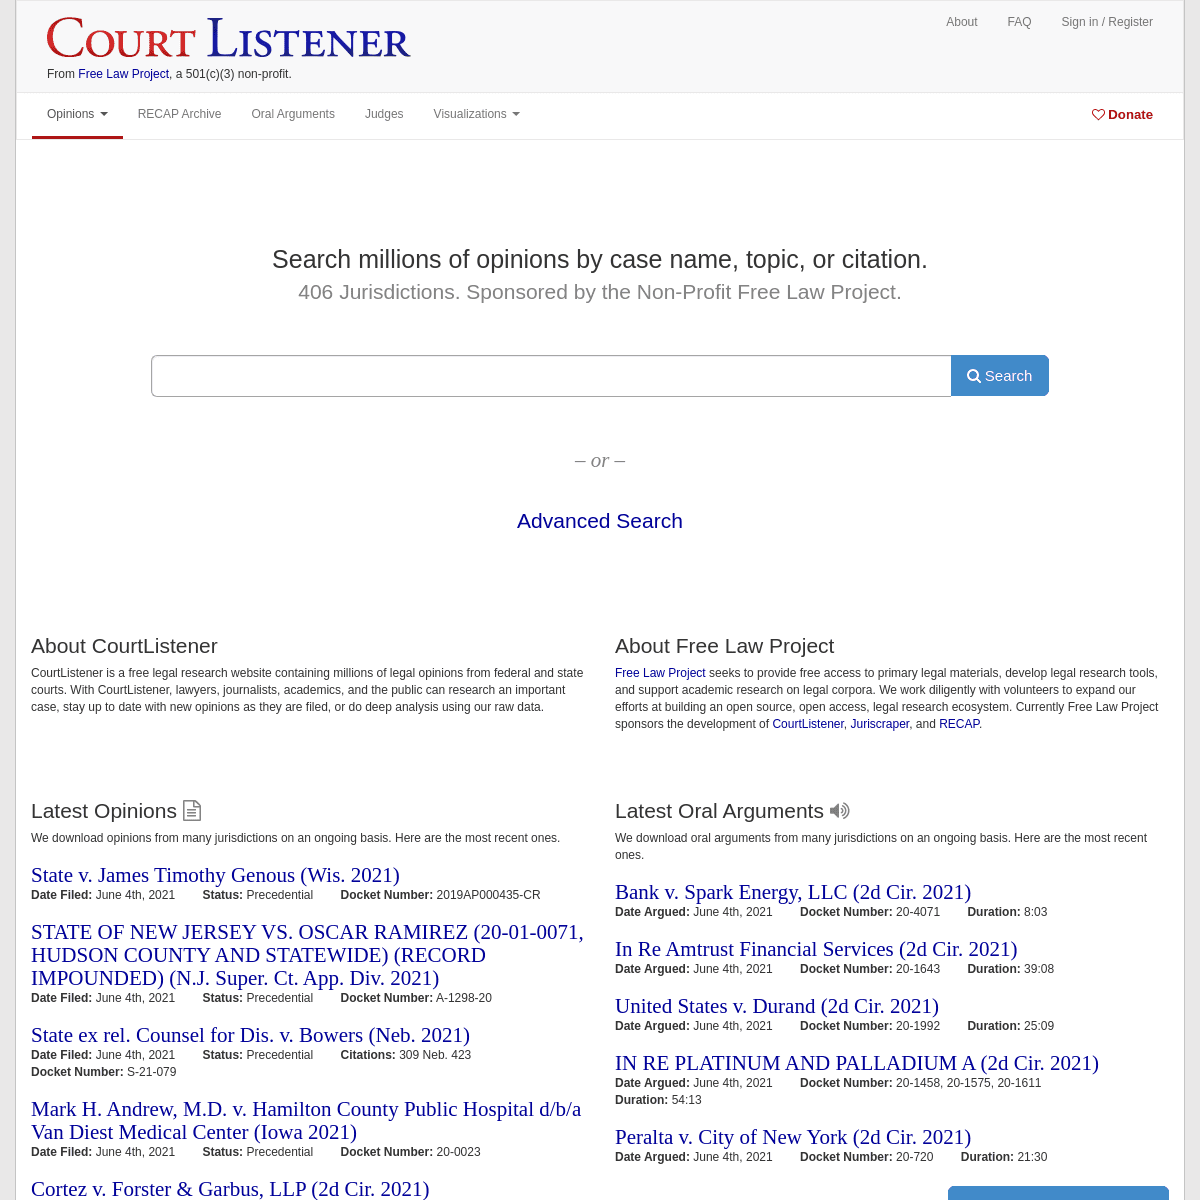 A complete backup of https://courtlistener.com